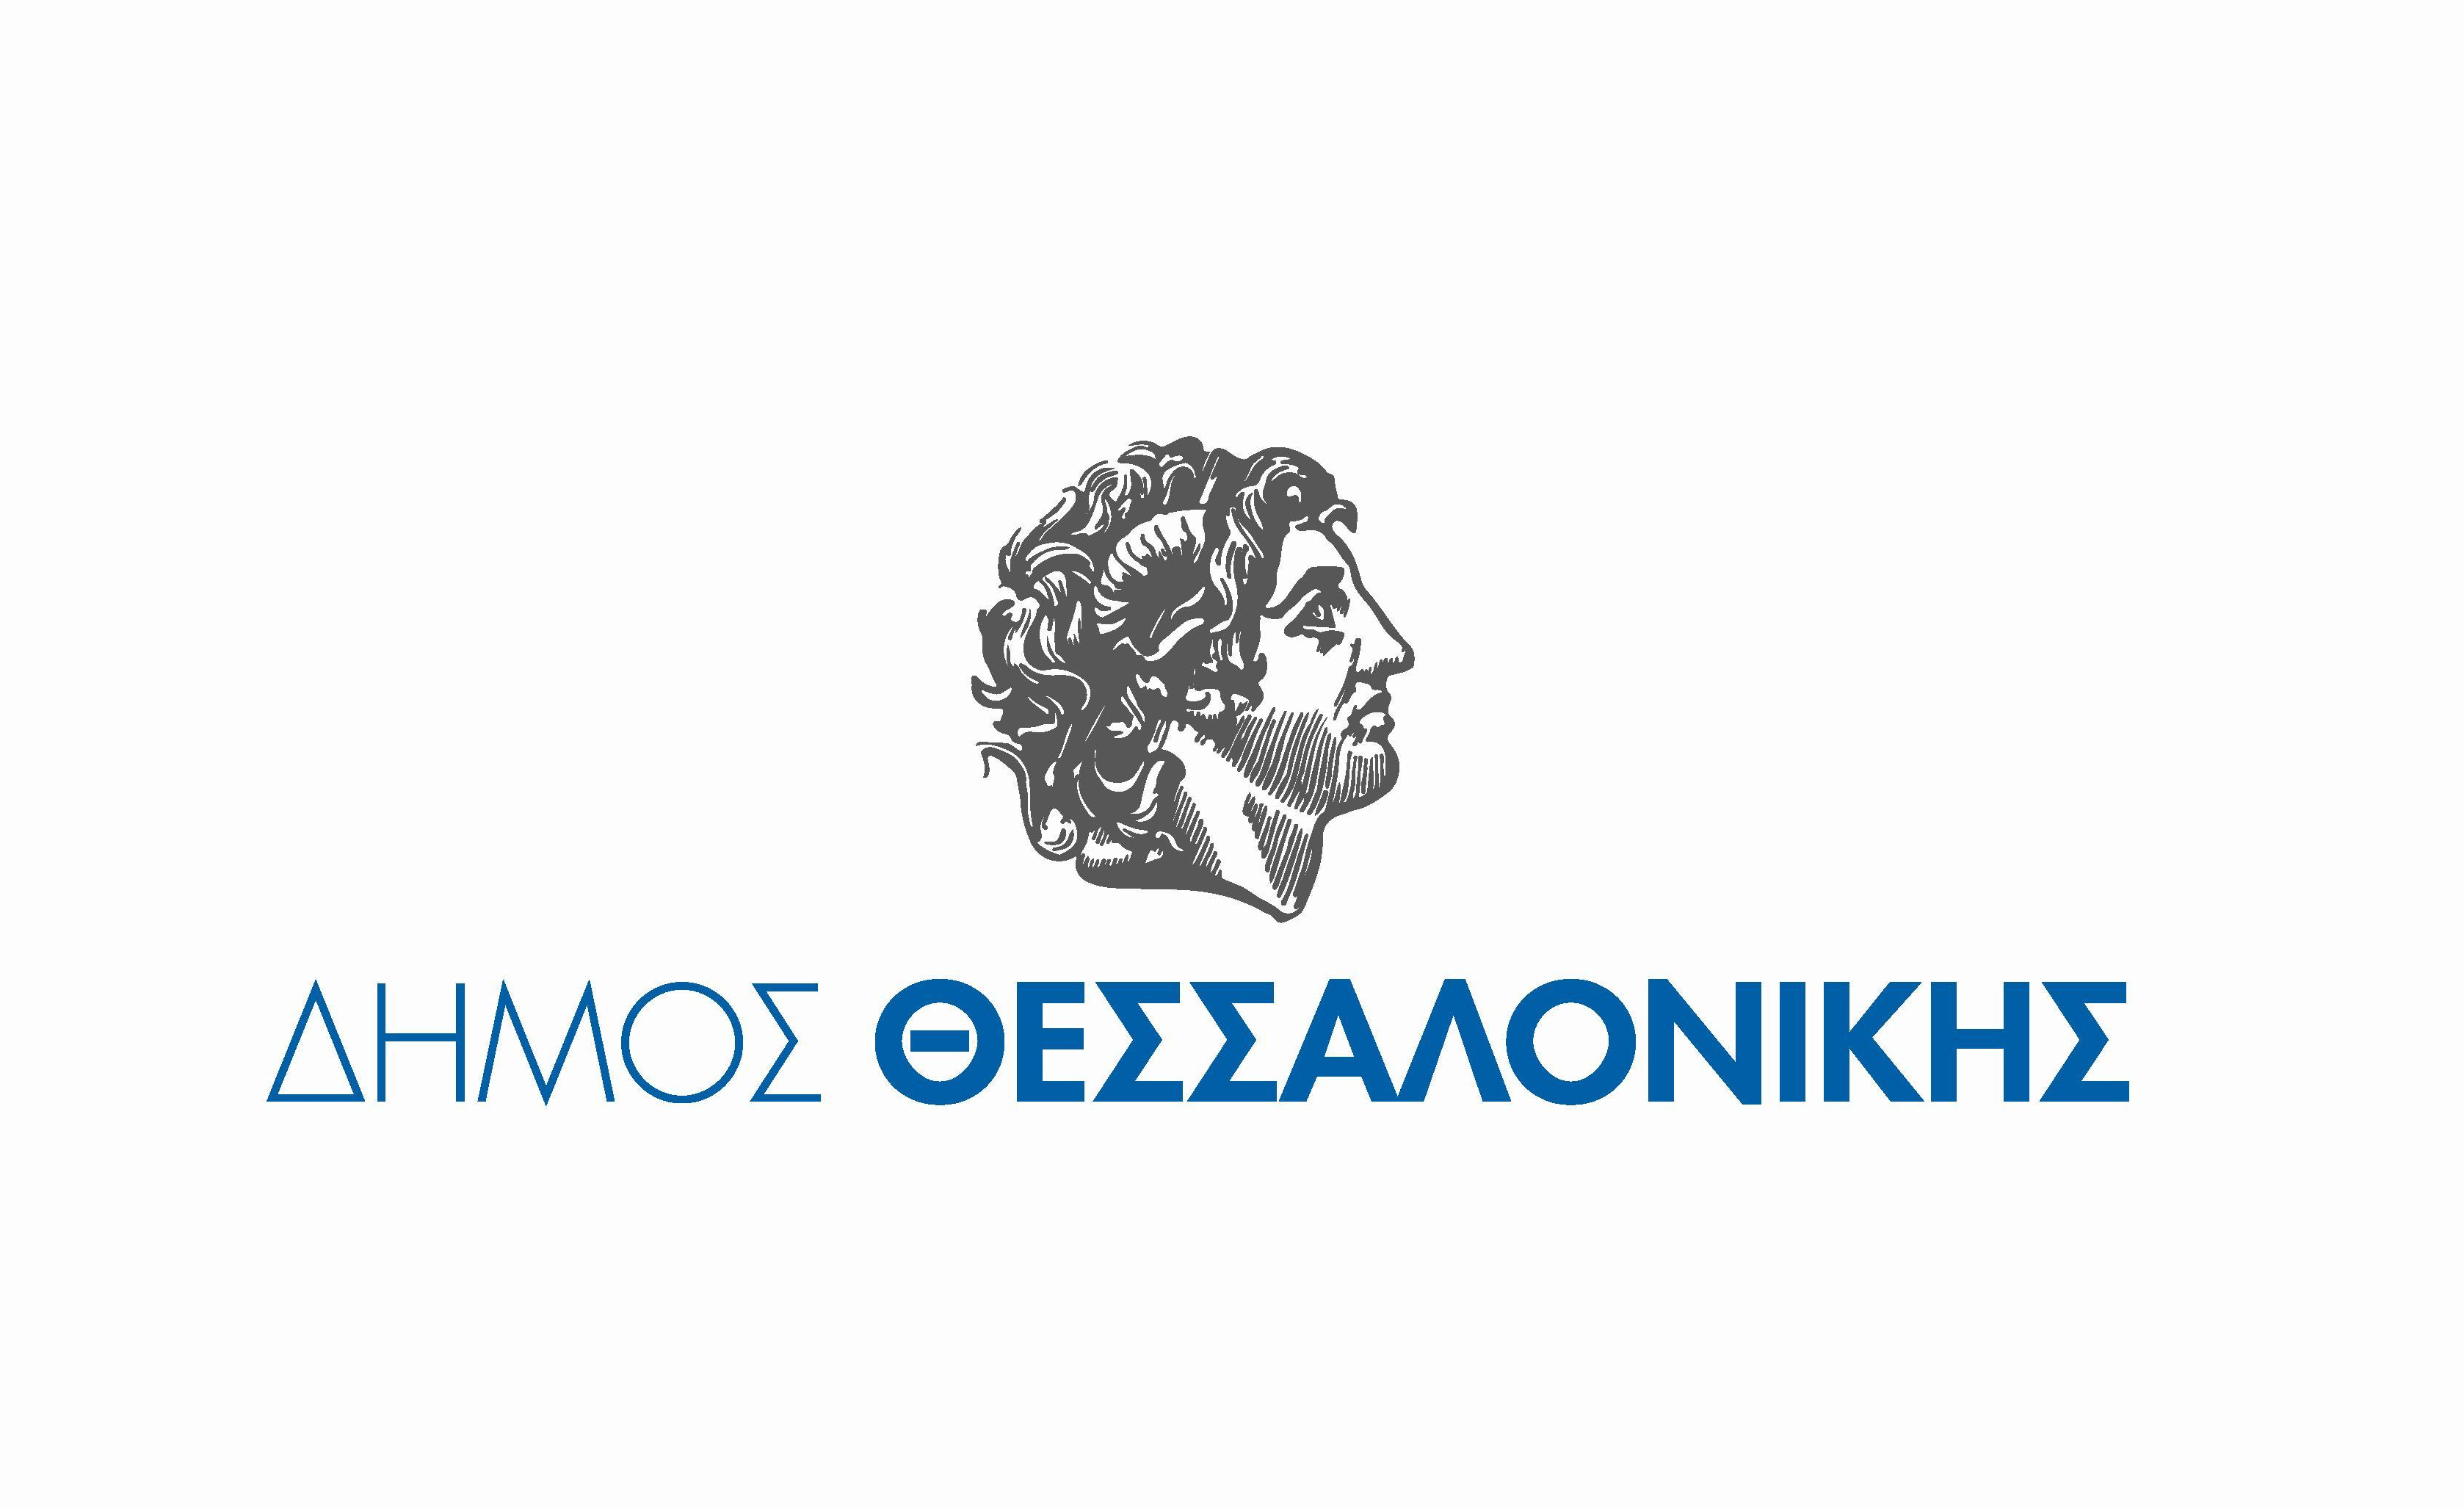 Παραγωγή αναμνηστικών ειδών/δώρων – Δήμος Θεσσαλονίκης